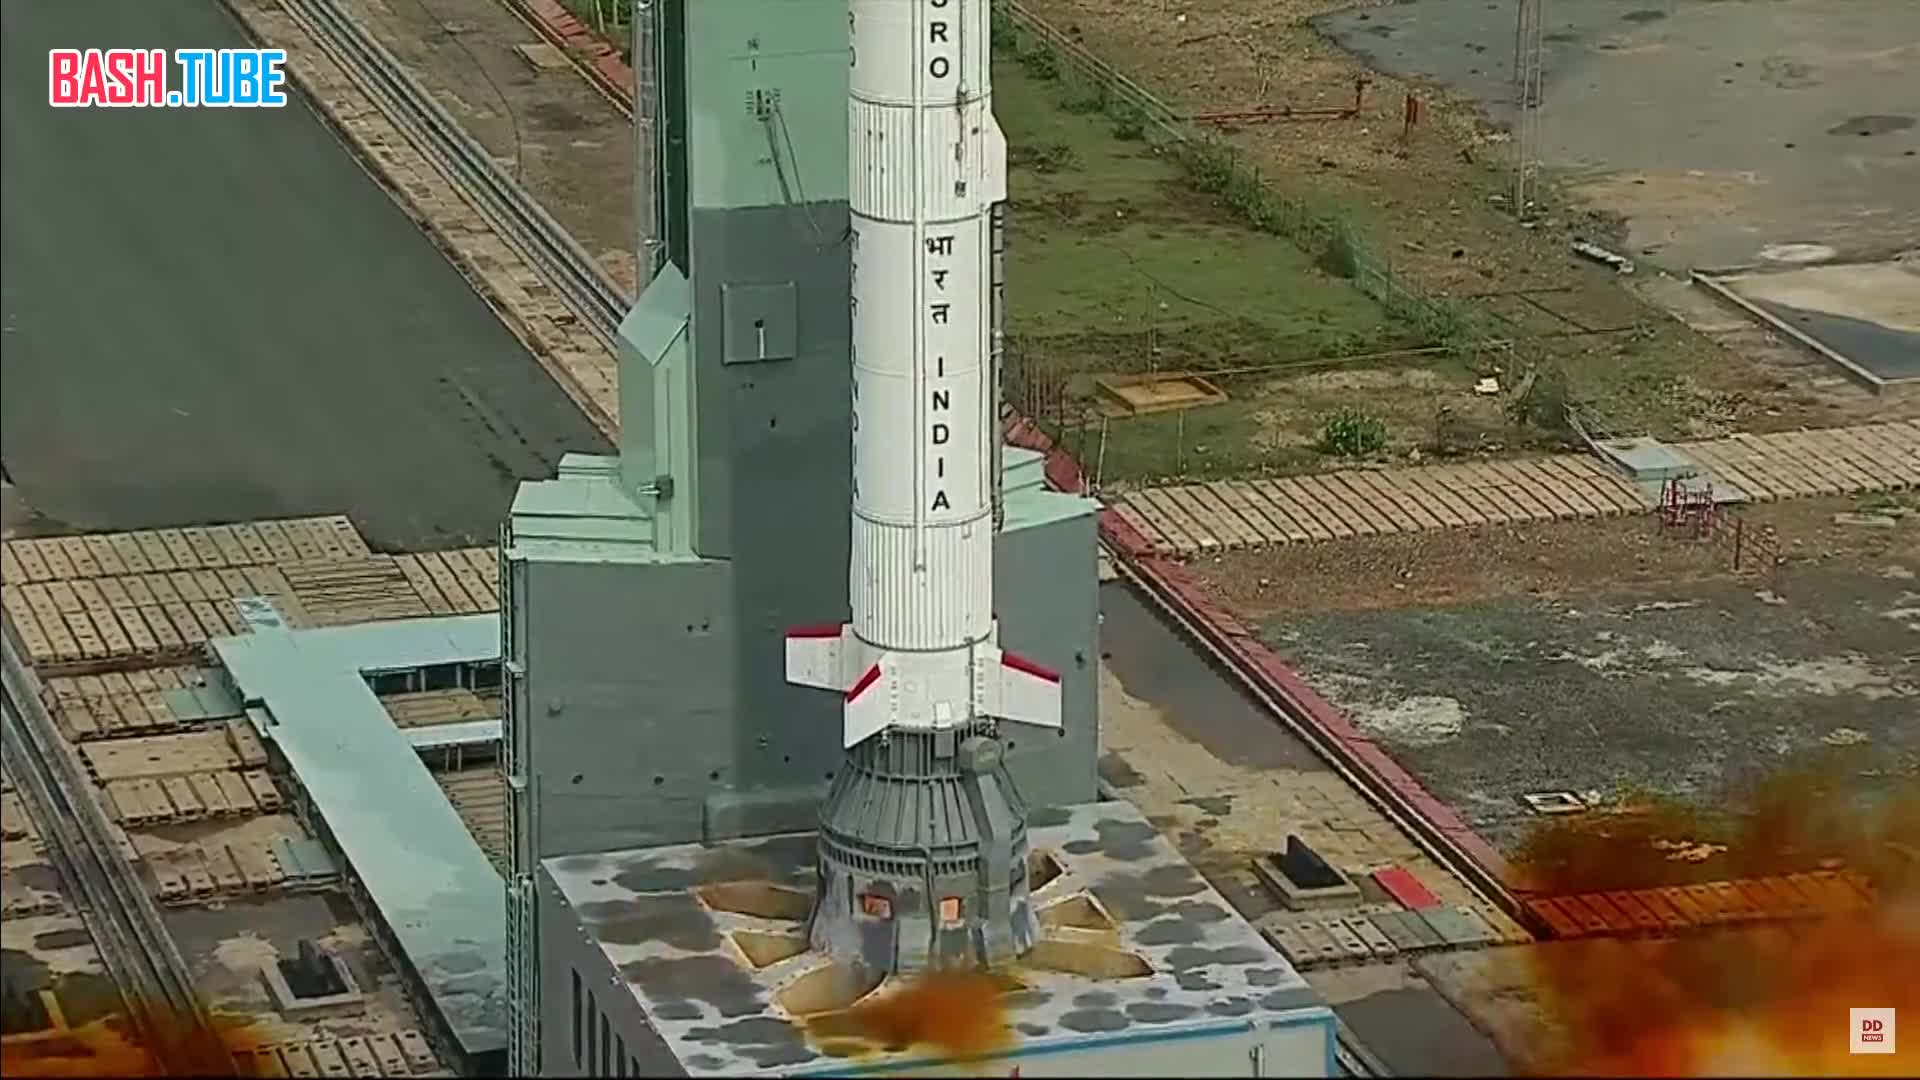  В Индии успешно состоялся первый запуск ракеты в рамках предстоящей собственной орбитальной пилотируемой миссии